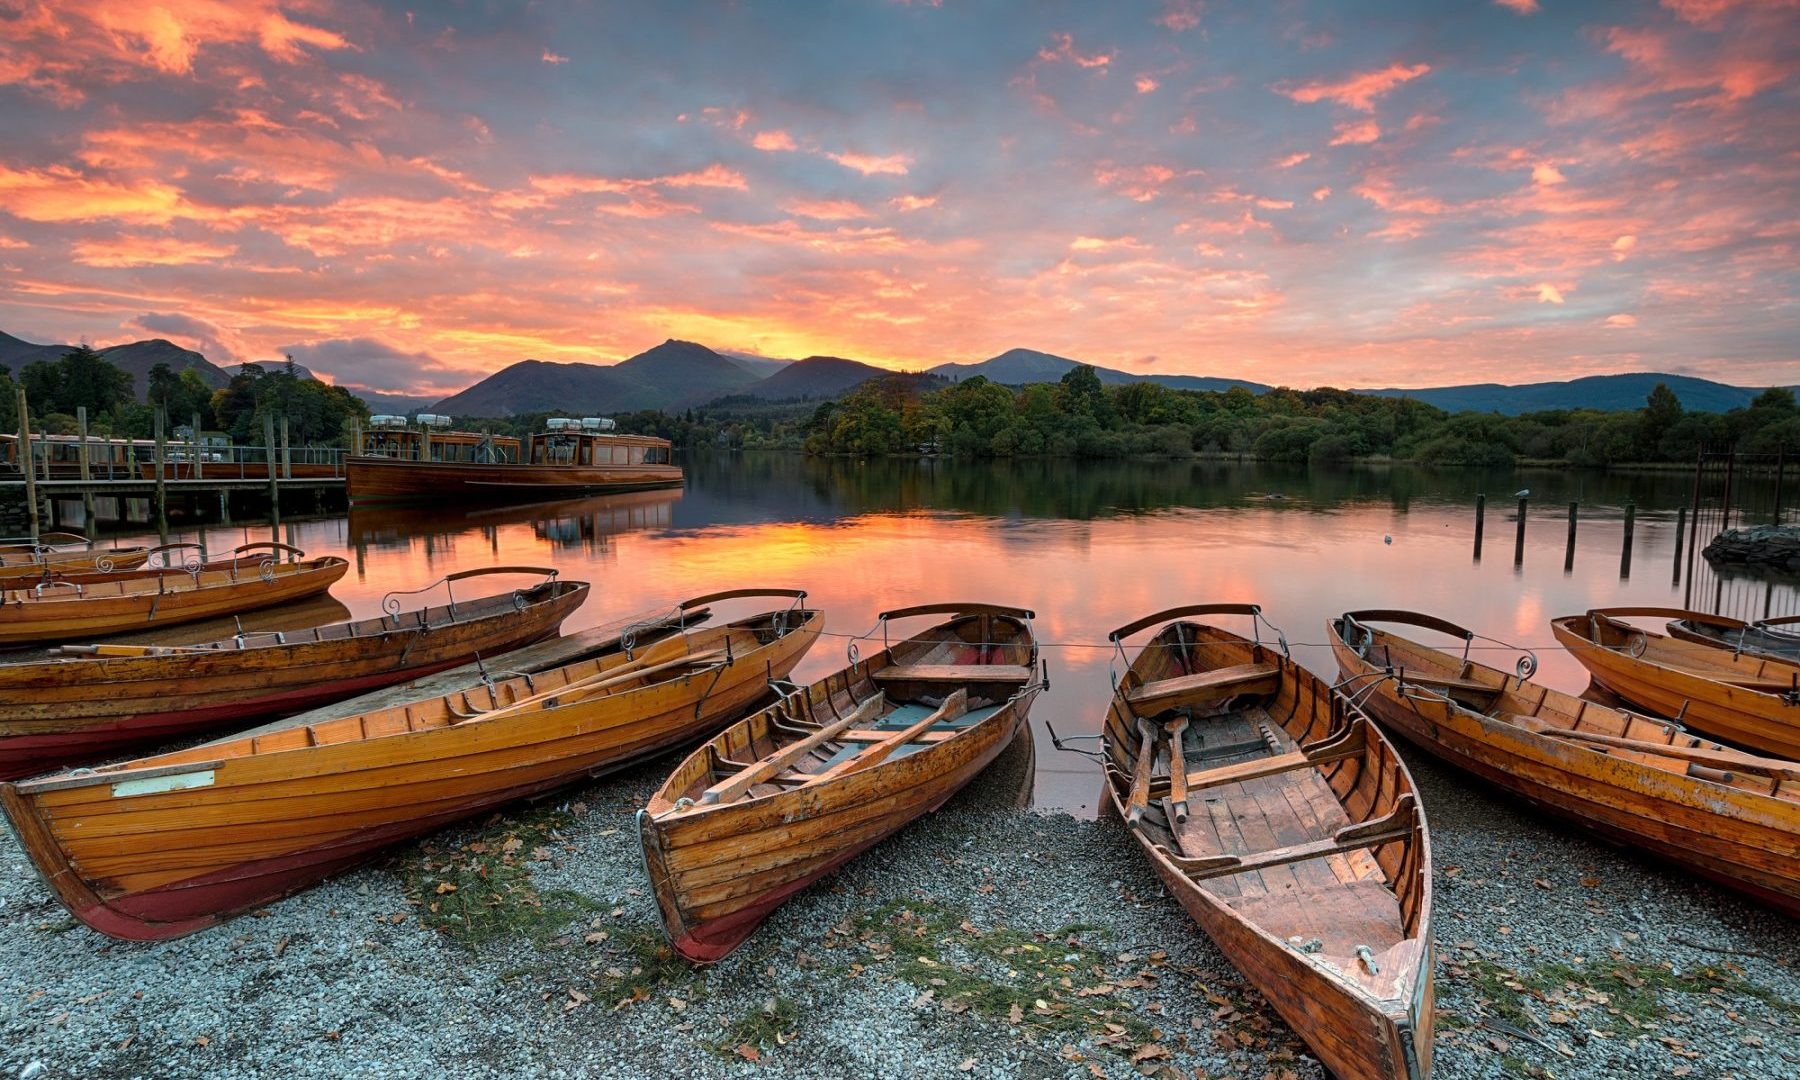 canoeing-at-sunset-on-the-lake-luxury-holiday